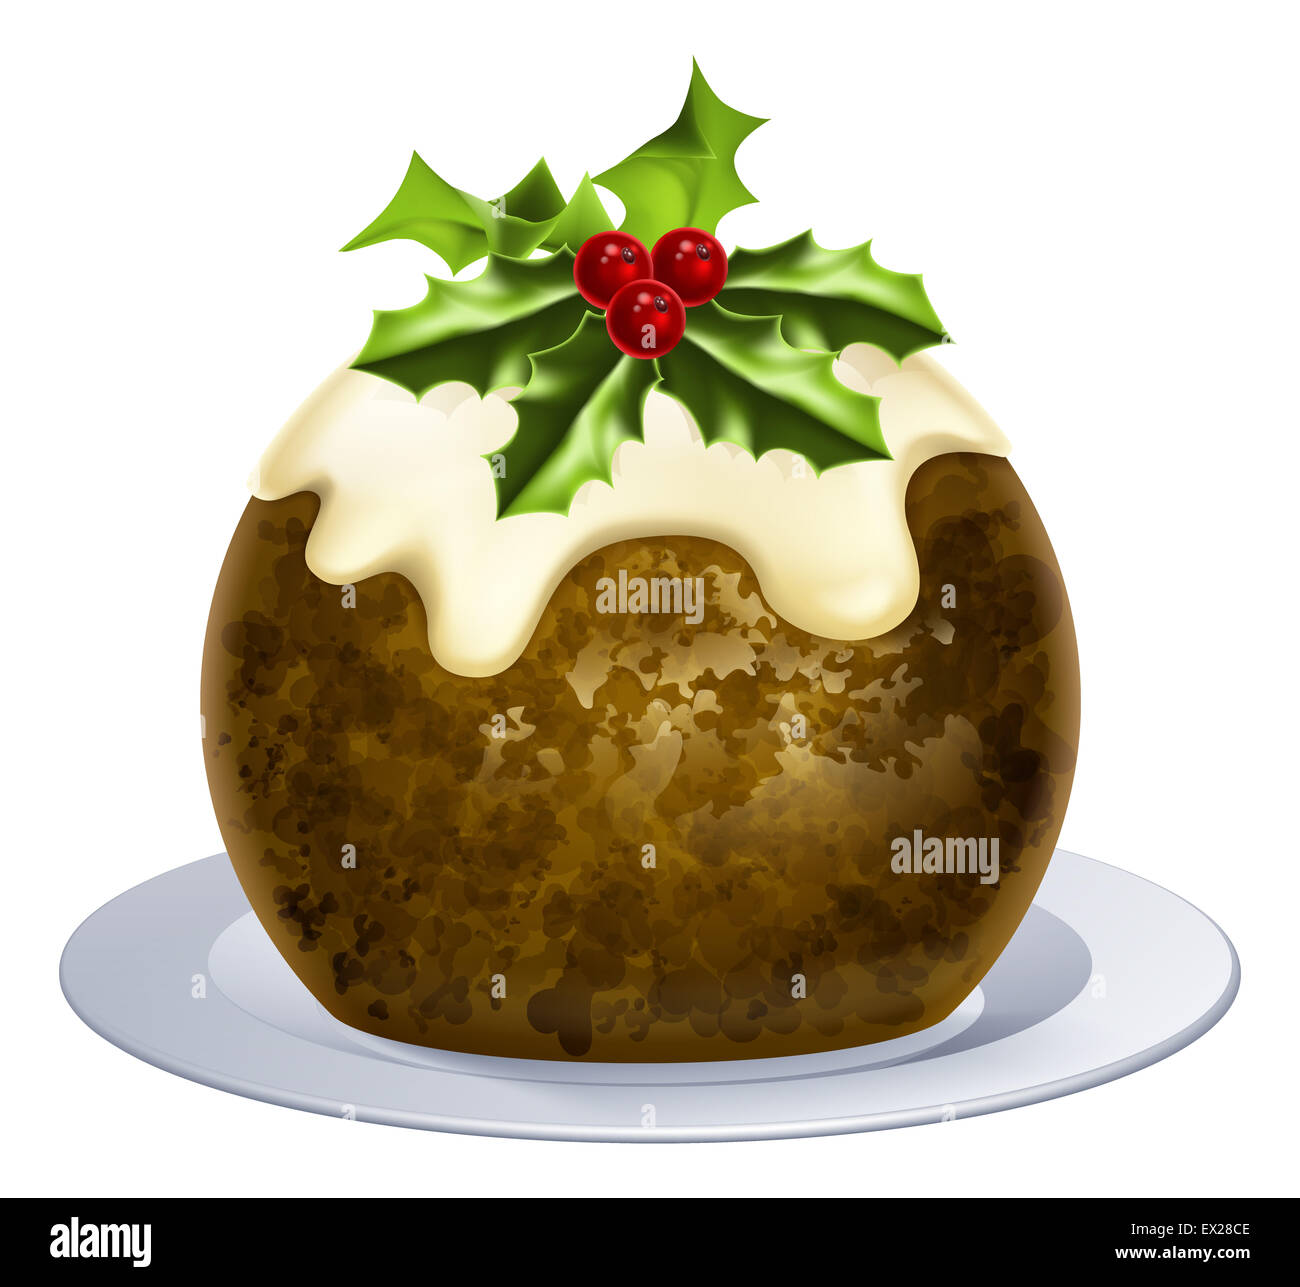 Ein Beispiel für einen Christmas Pudding Kuchen mit Holly an der Spitze Stockfoto